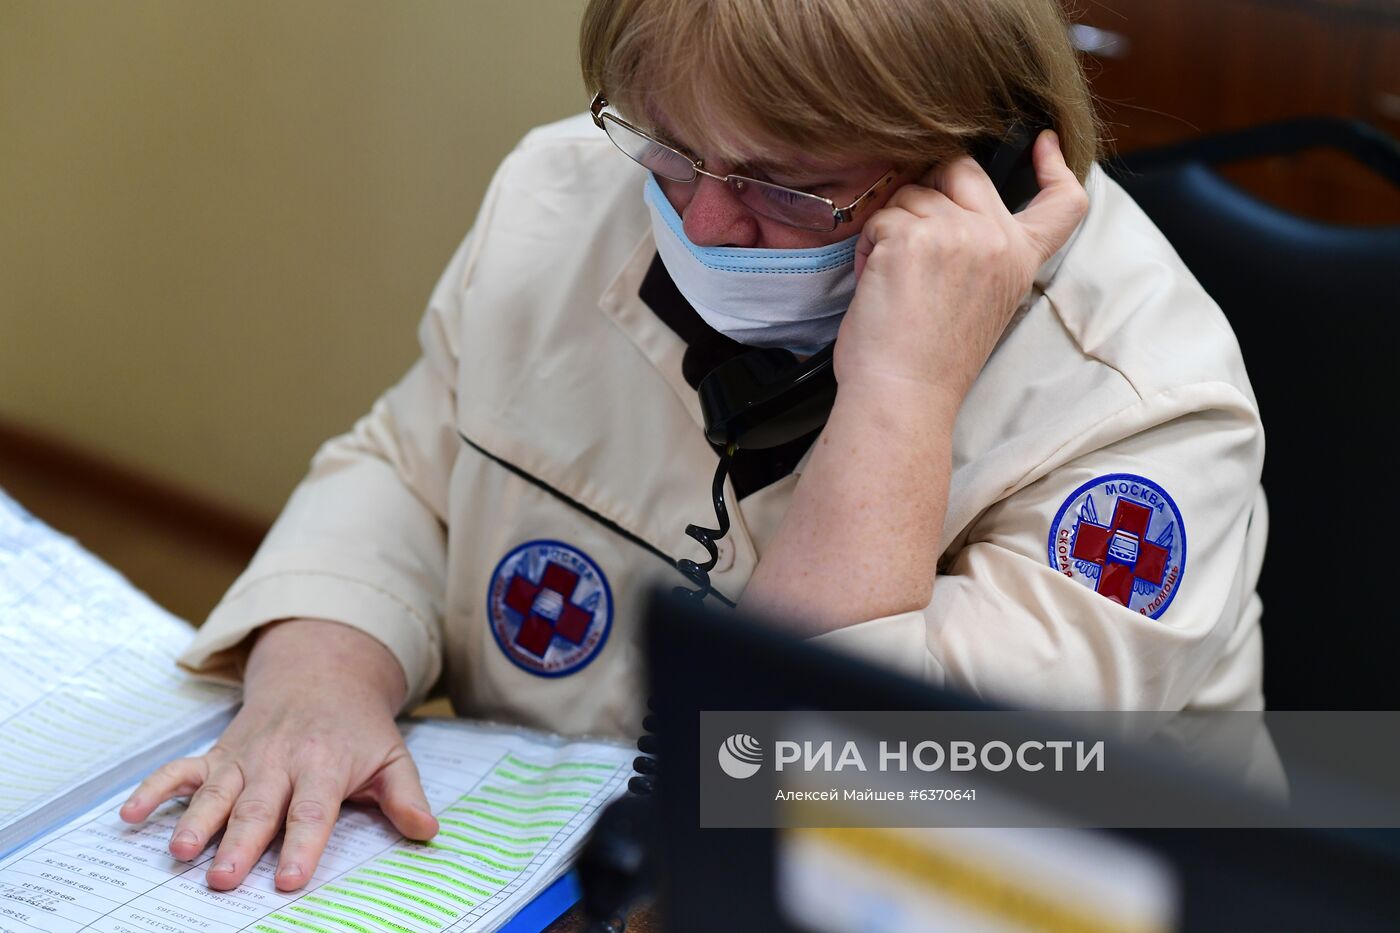 Работа скорой помощи в Москве 